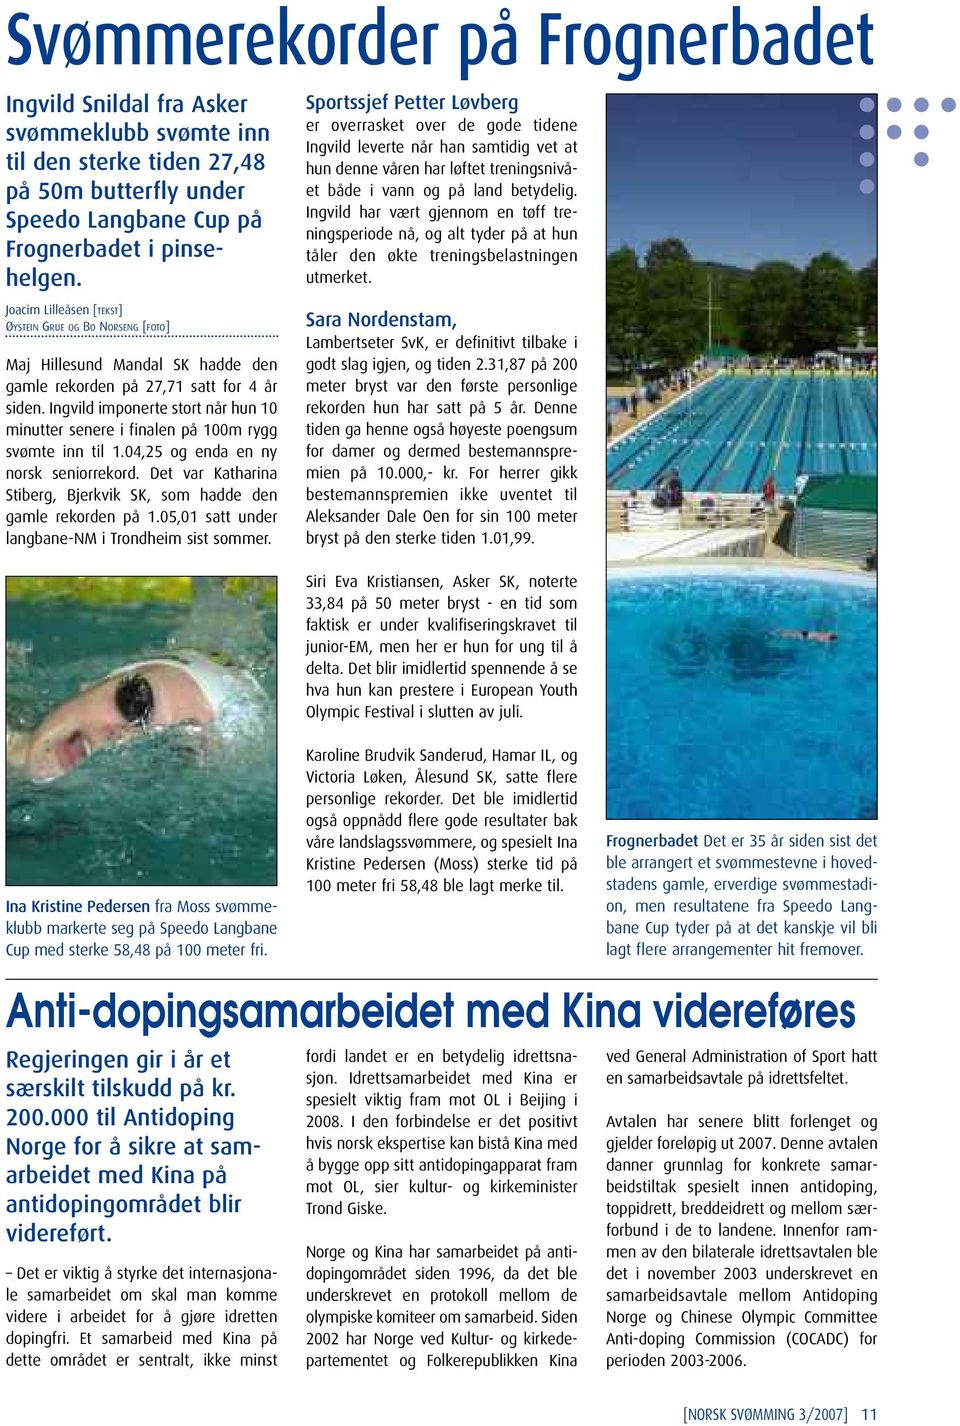 Ingvild imponerte stort når hun 10 minutter senere i finalen på 100m rygg svømte inn til 1.04,25 og enda en ny norsk seniorrekord.